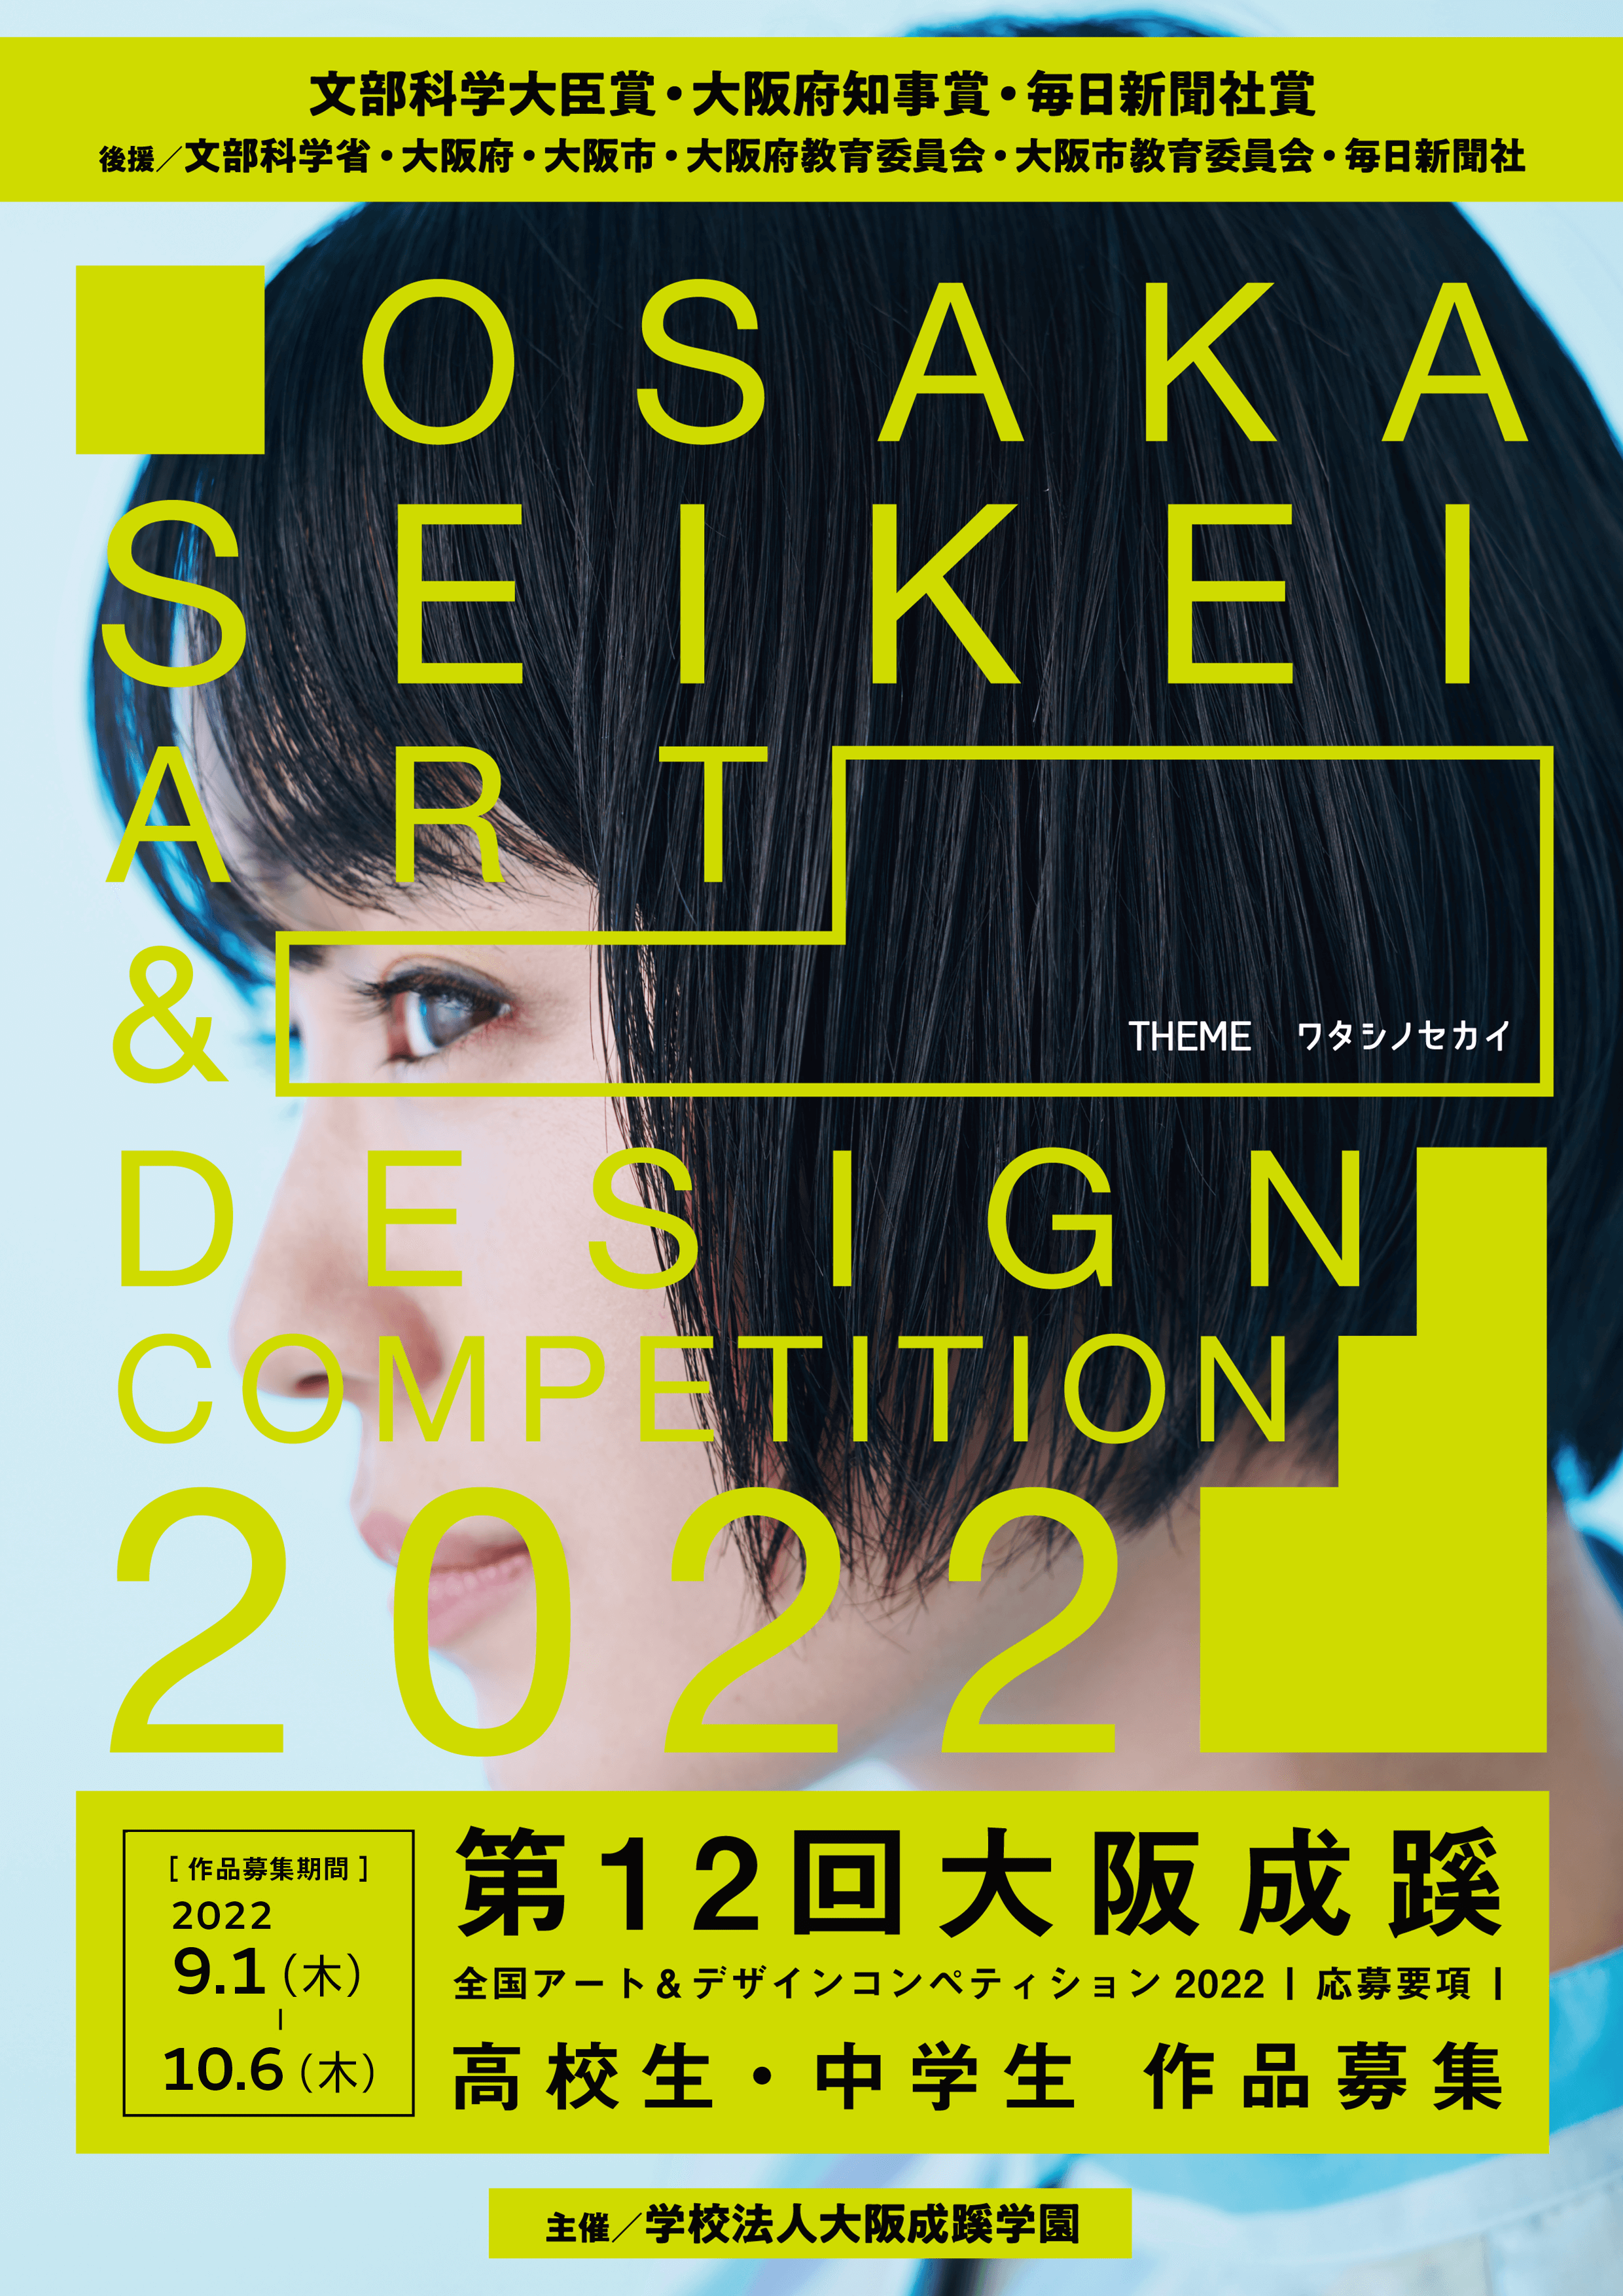 第12回大阪成蹊全国アート＆デザインコンペティション2022